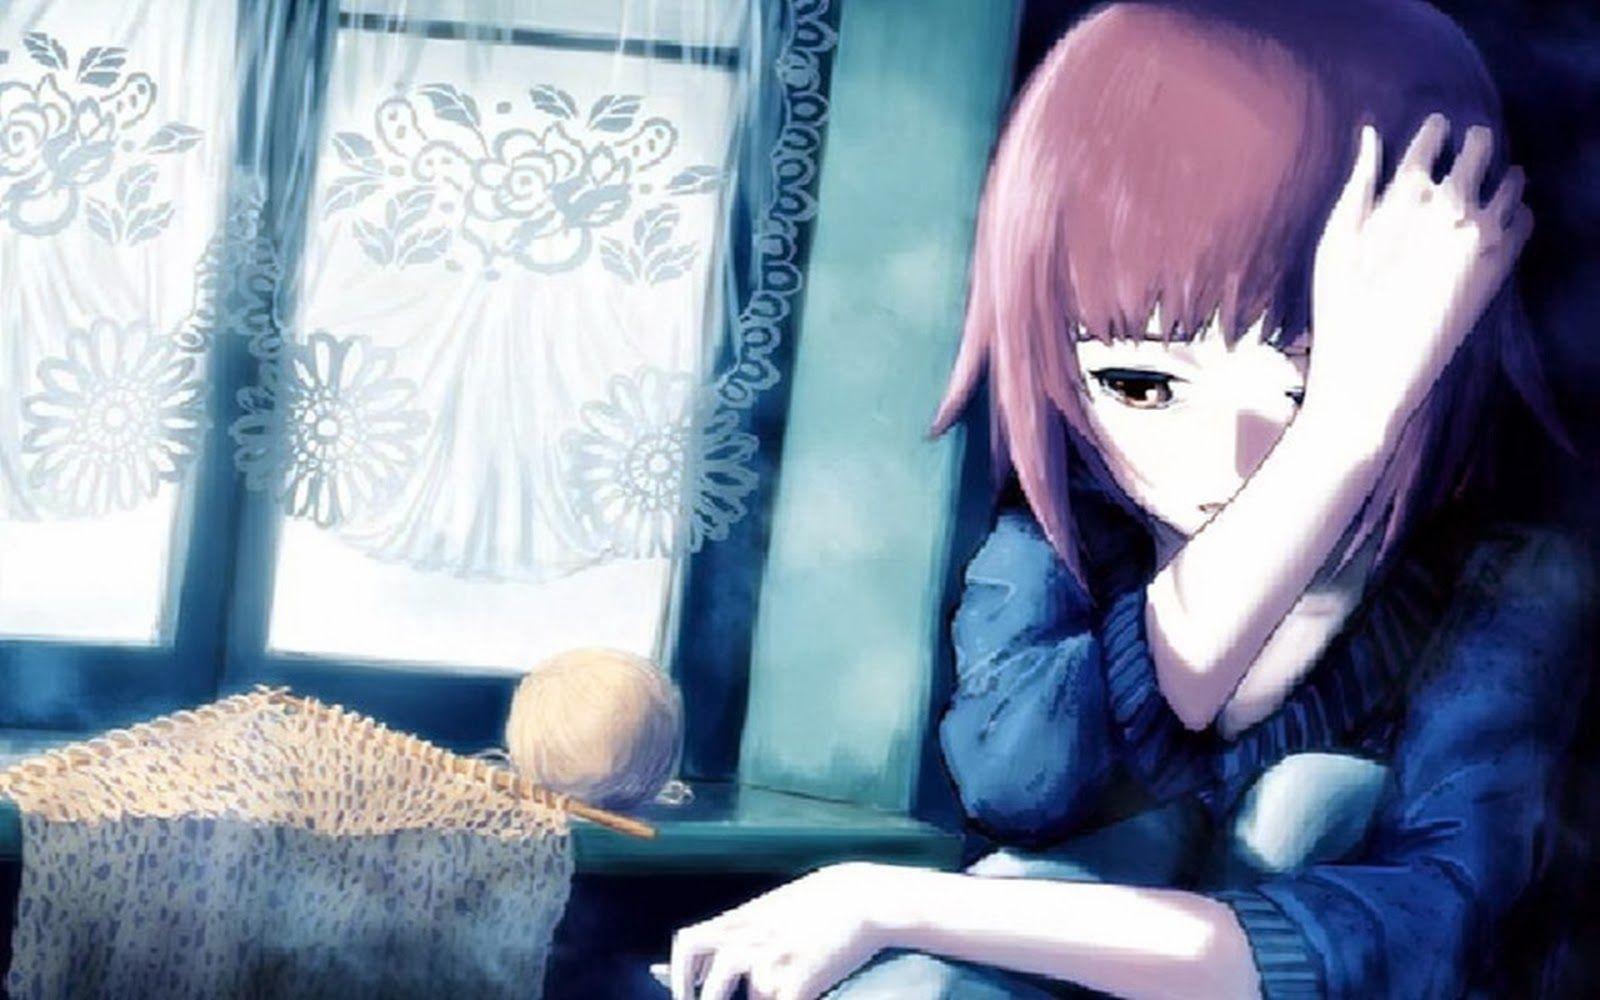 Sad anime girl style - Sad Anime Girl - Posters and Art Prints | TeePublic